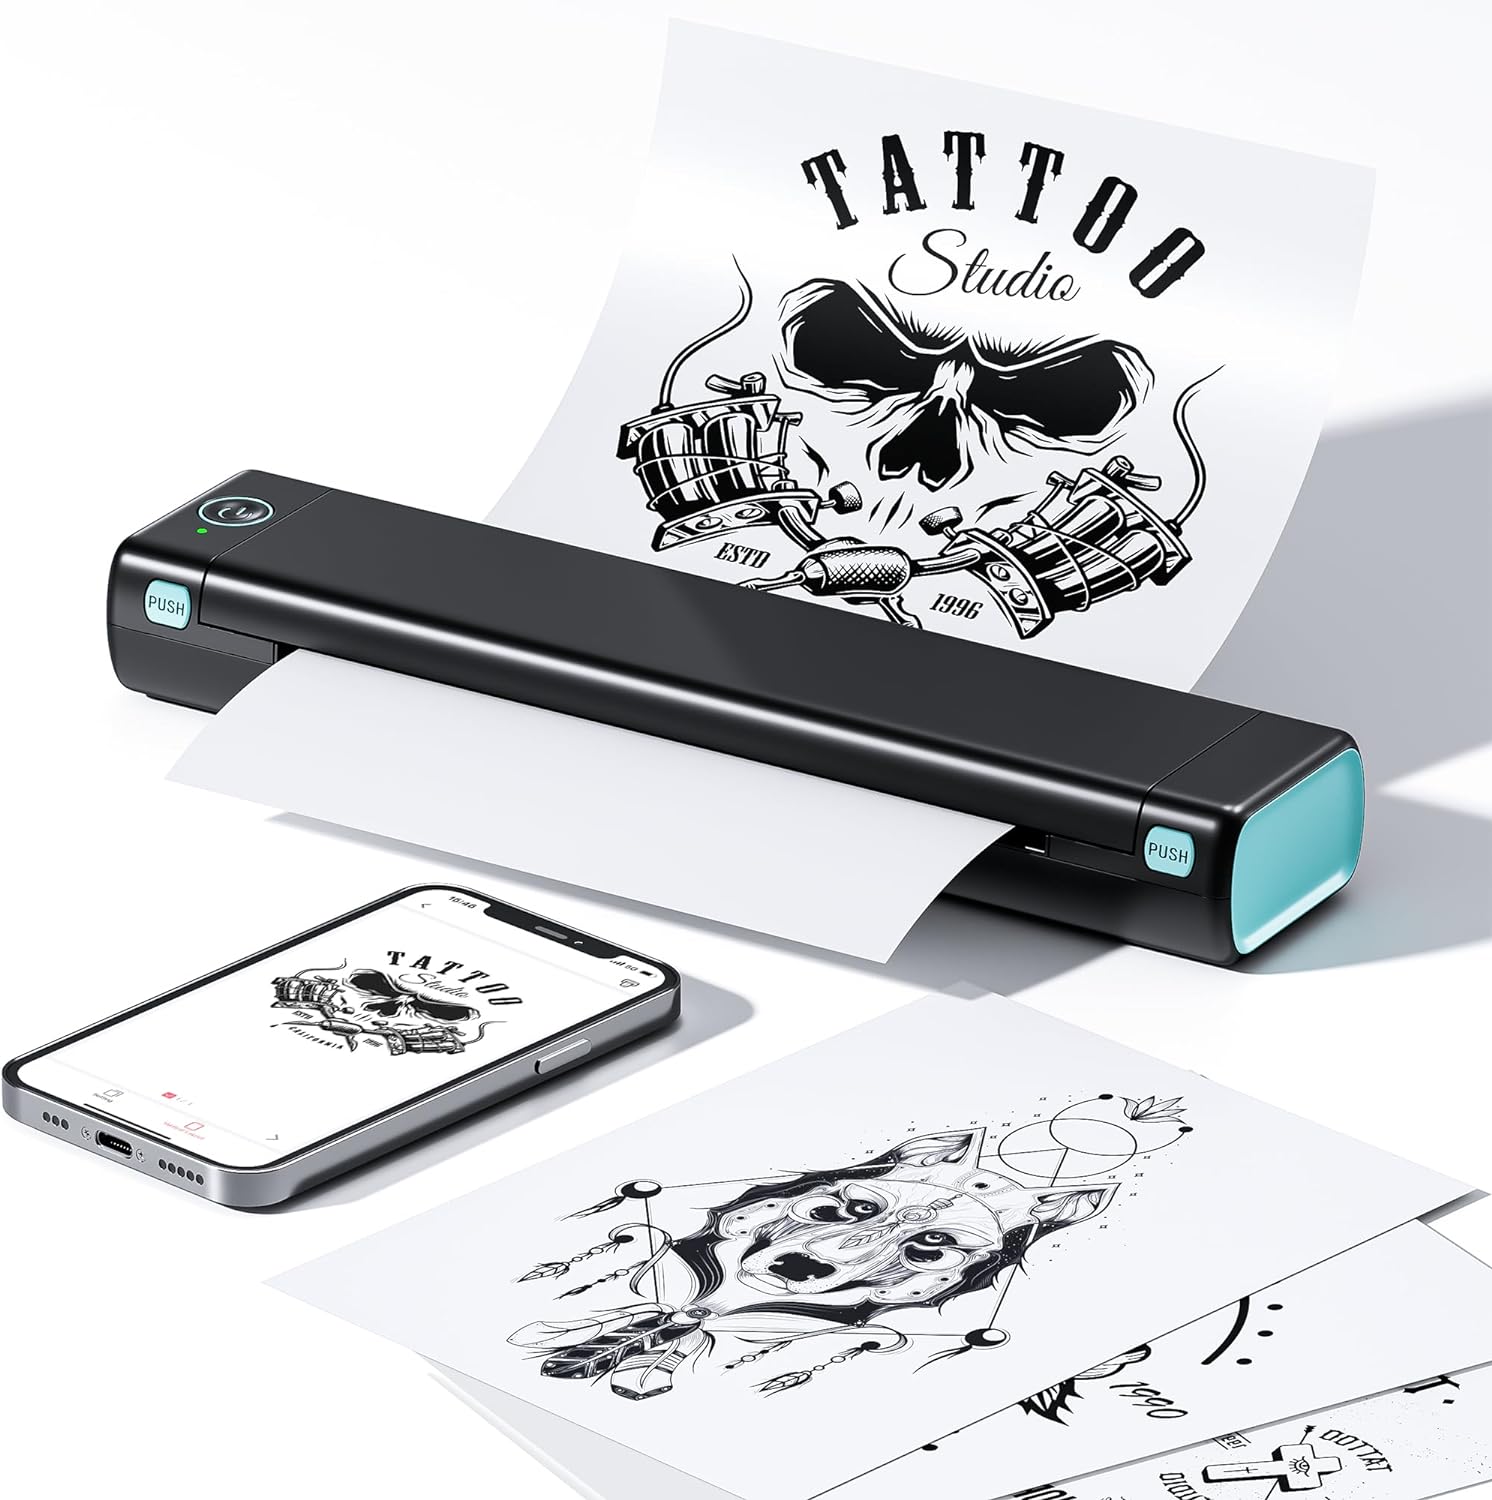 Tattoo Printer